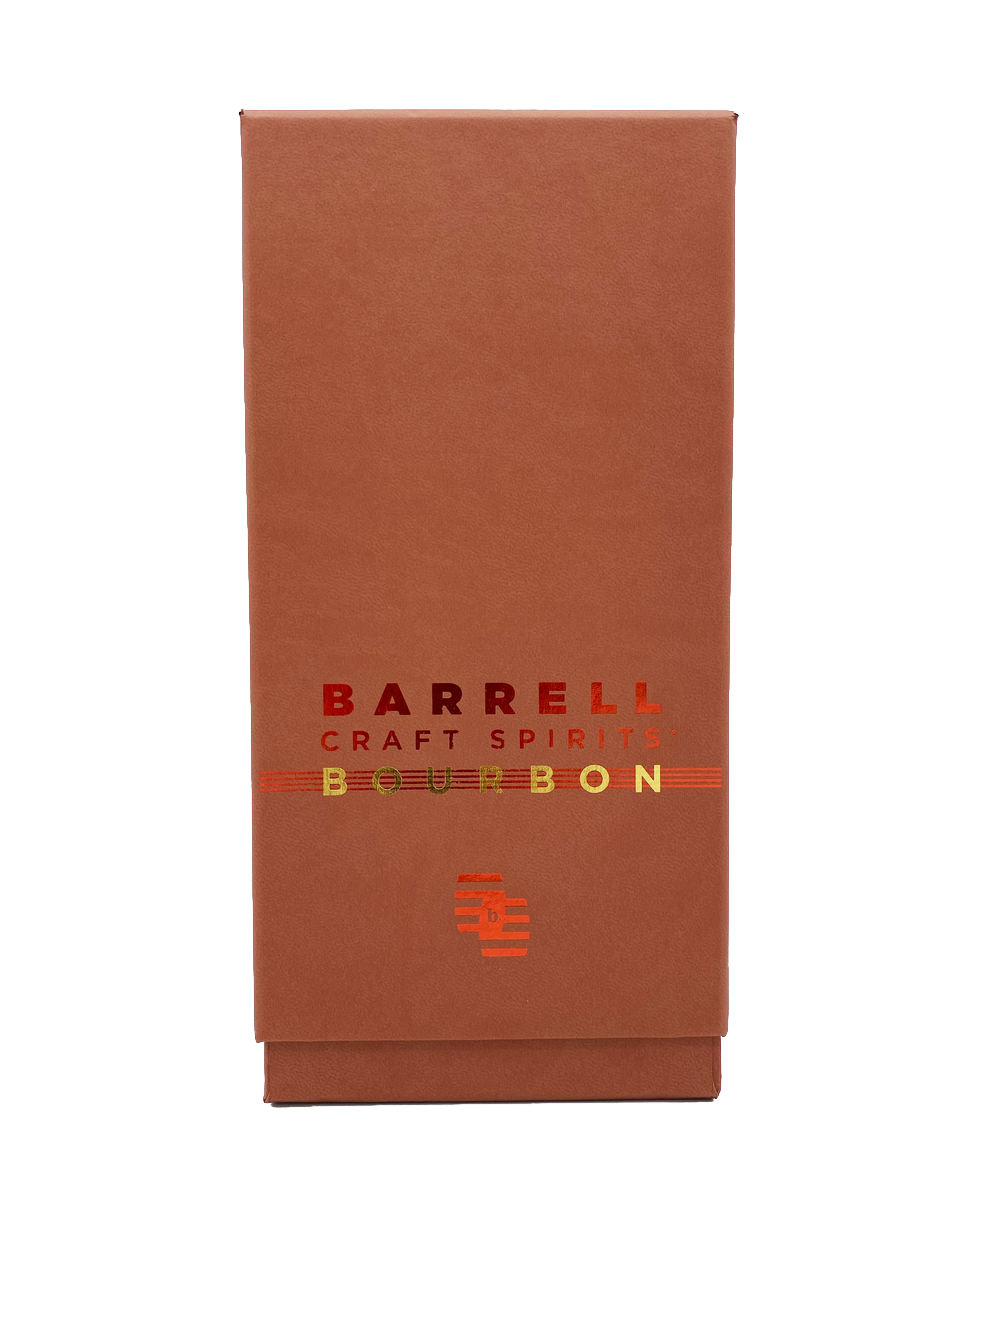 Barrell Craft Spirits Gold Label Bourbon 750mL